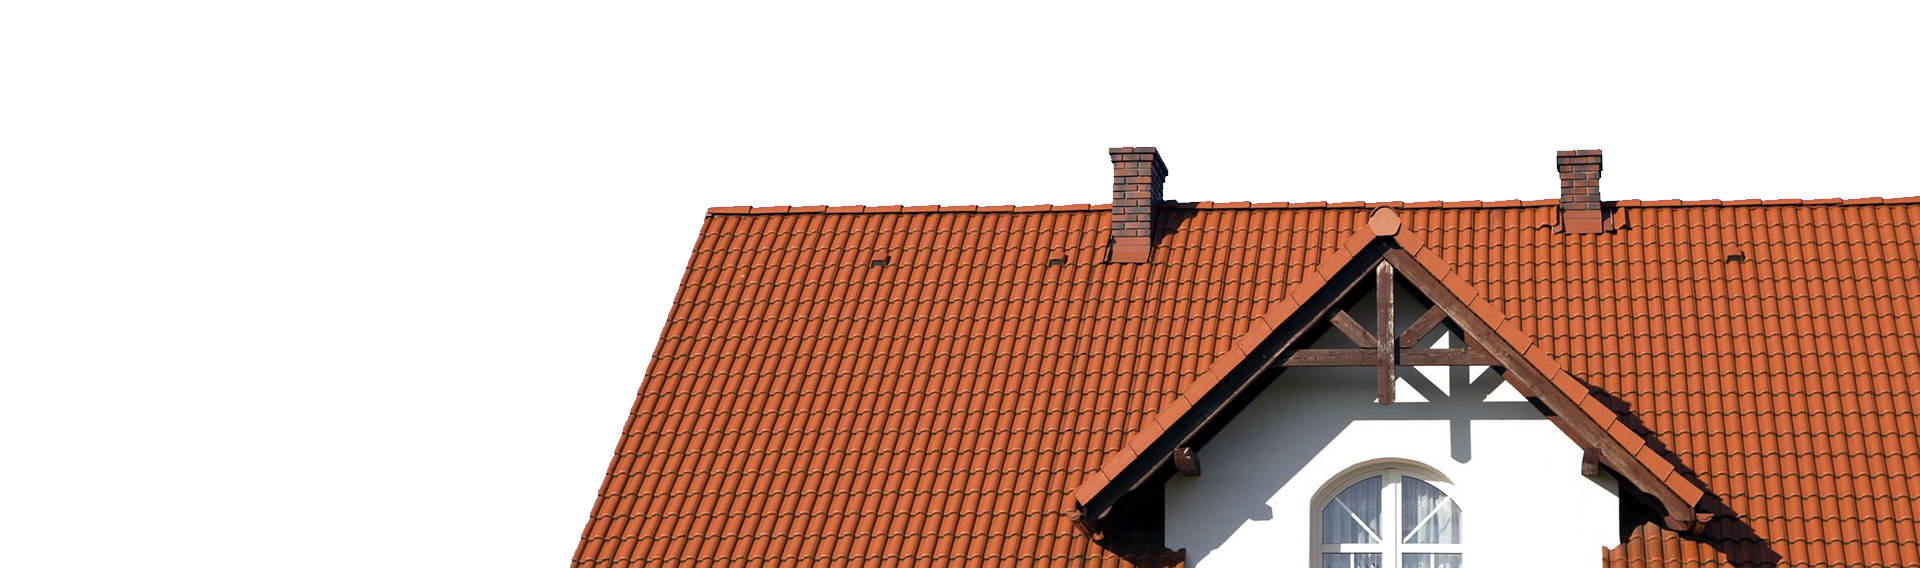 strechy kohút